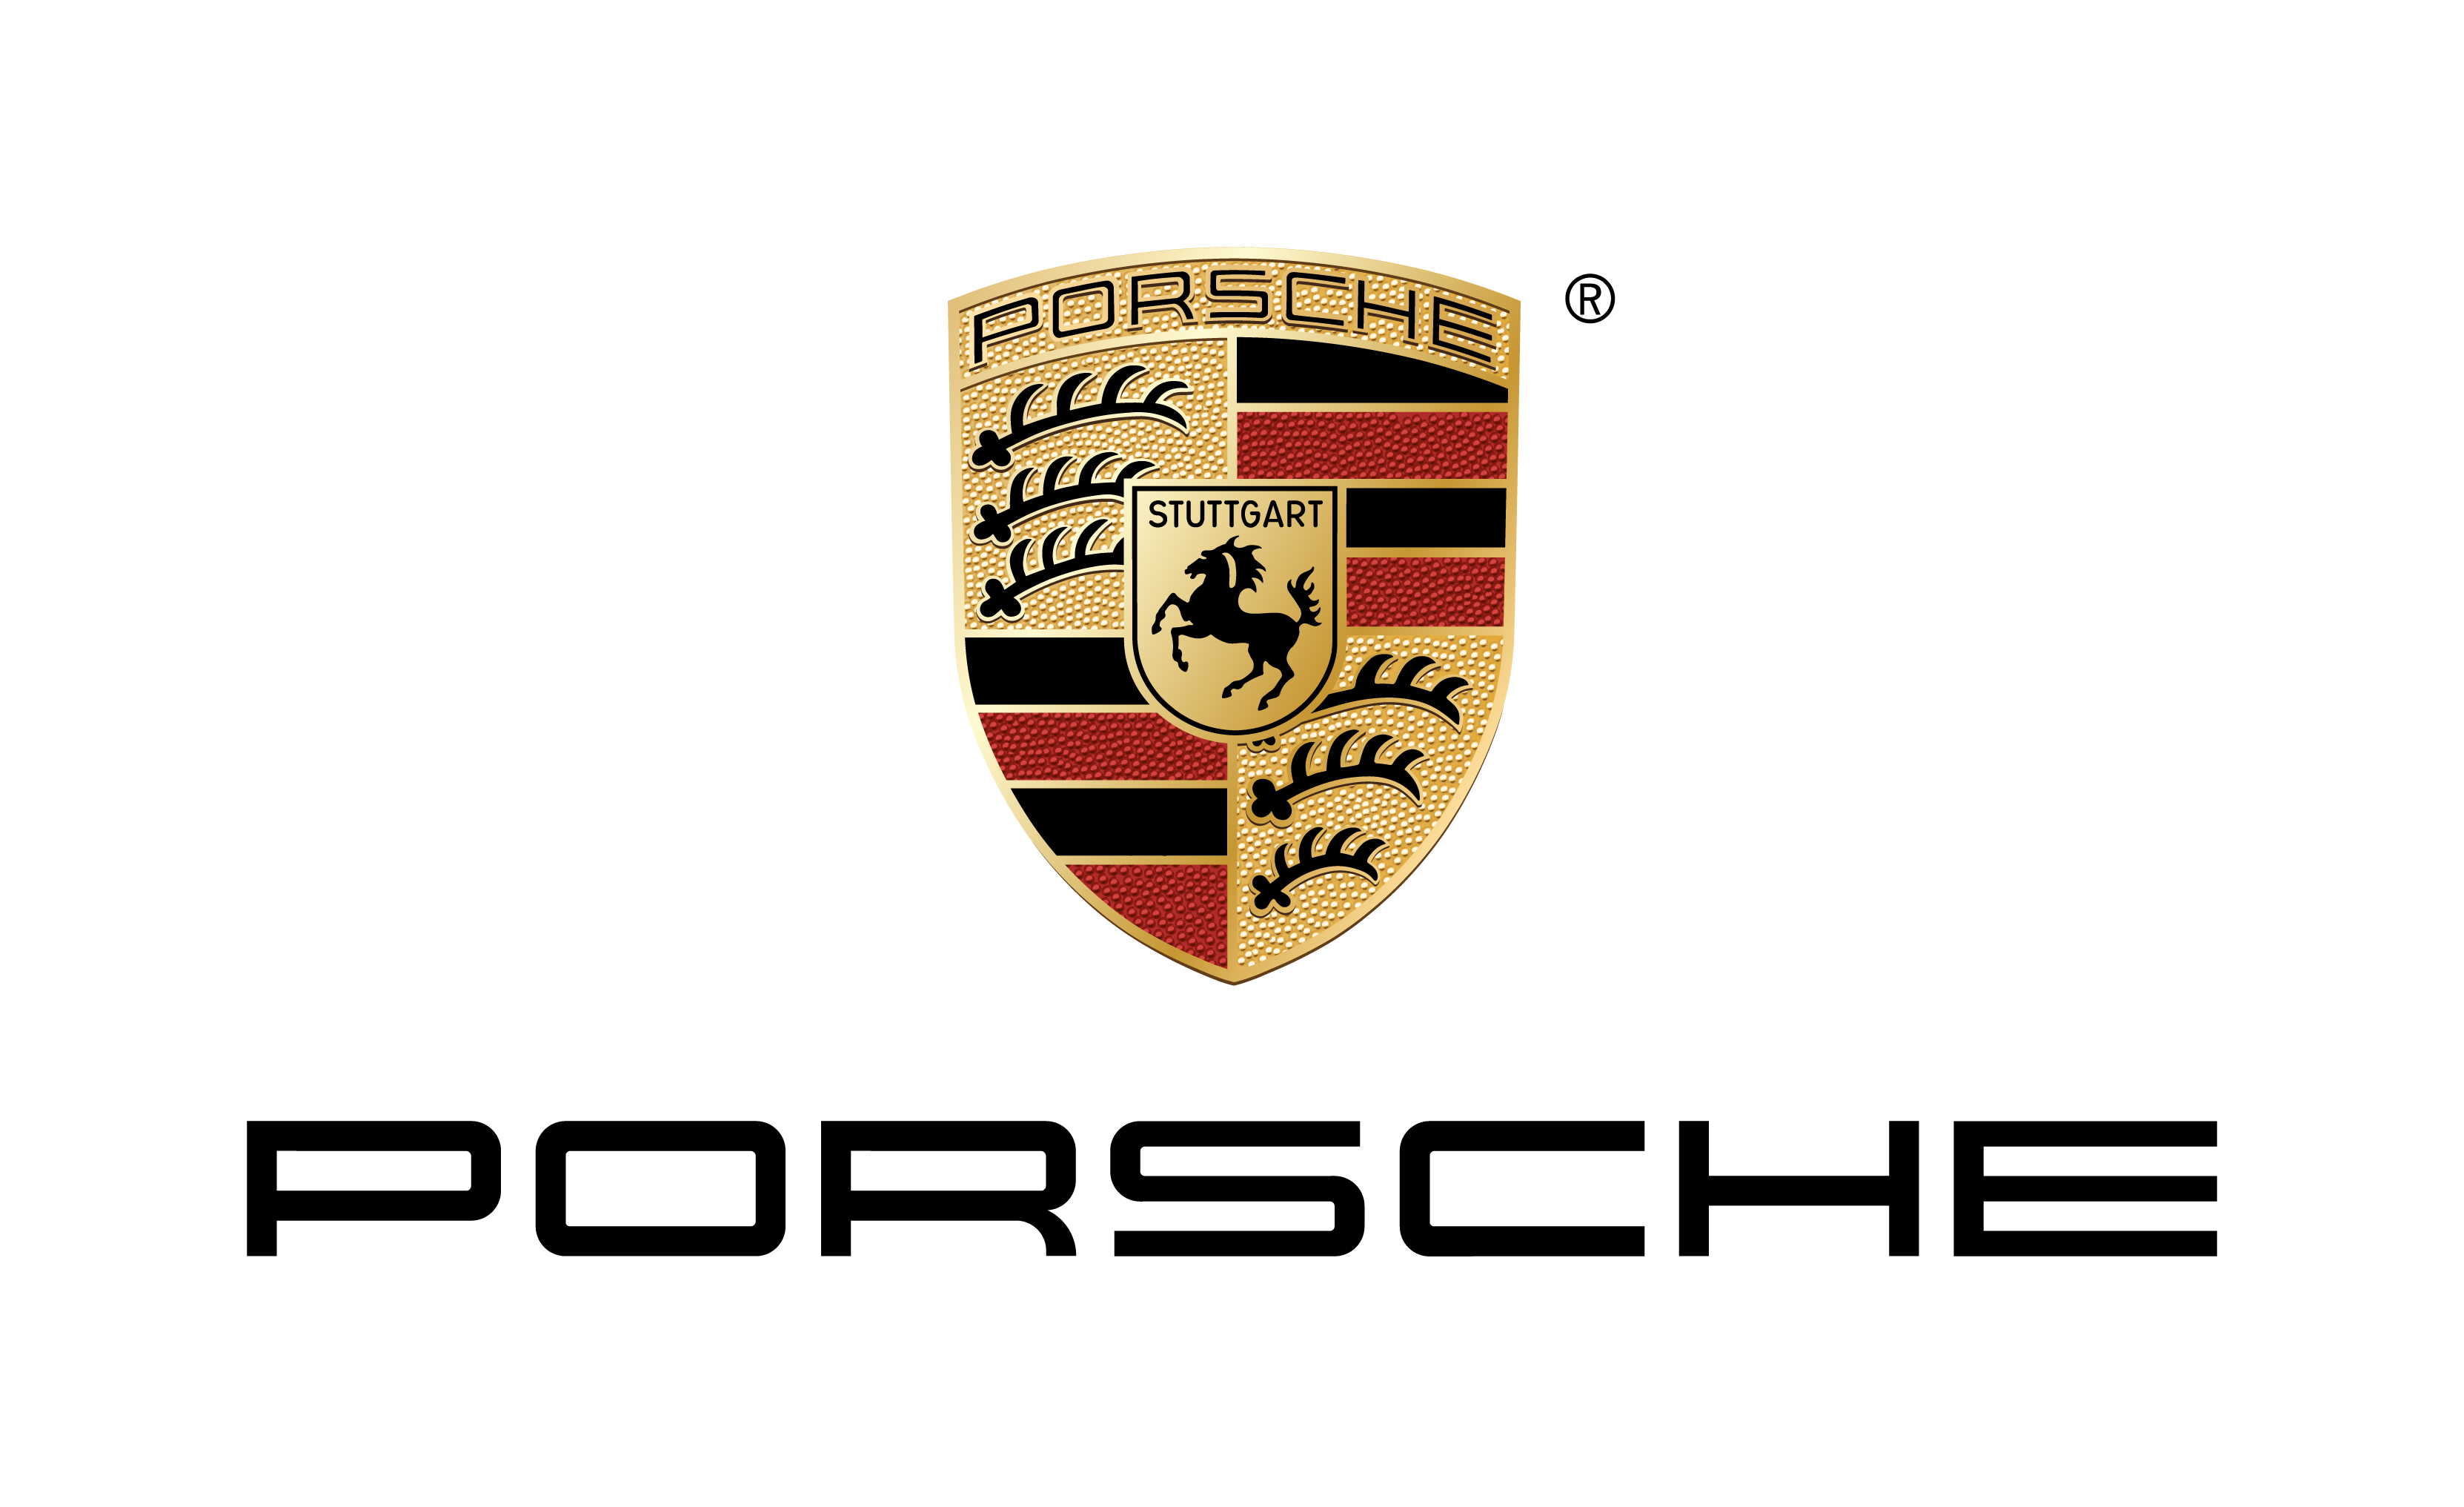 Porsche increases sa